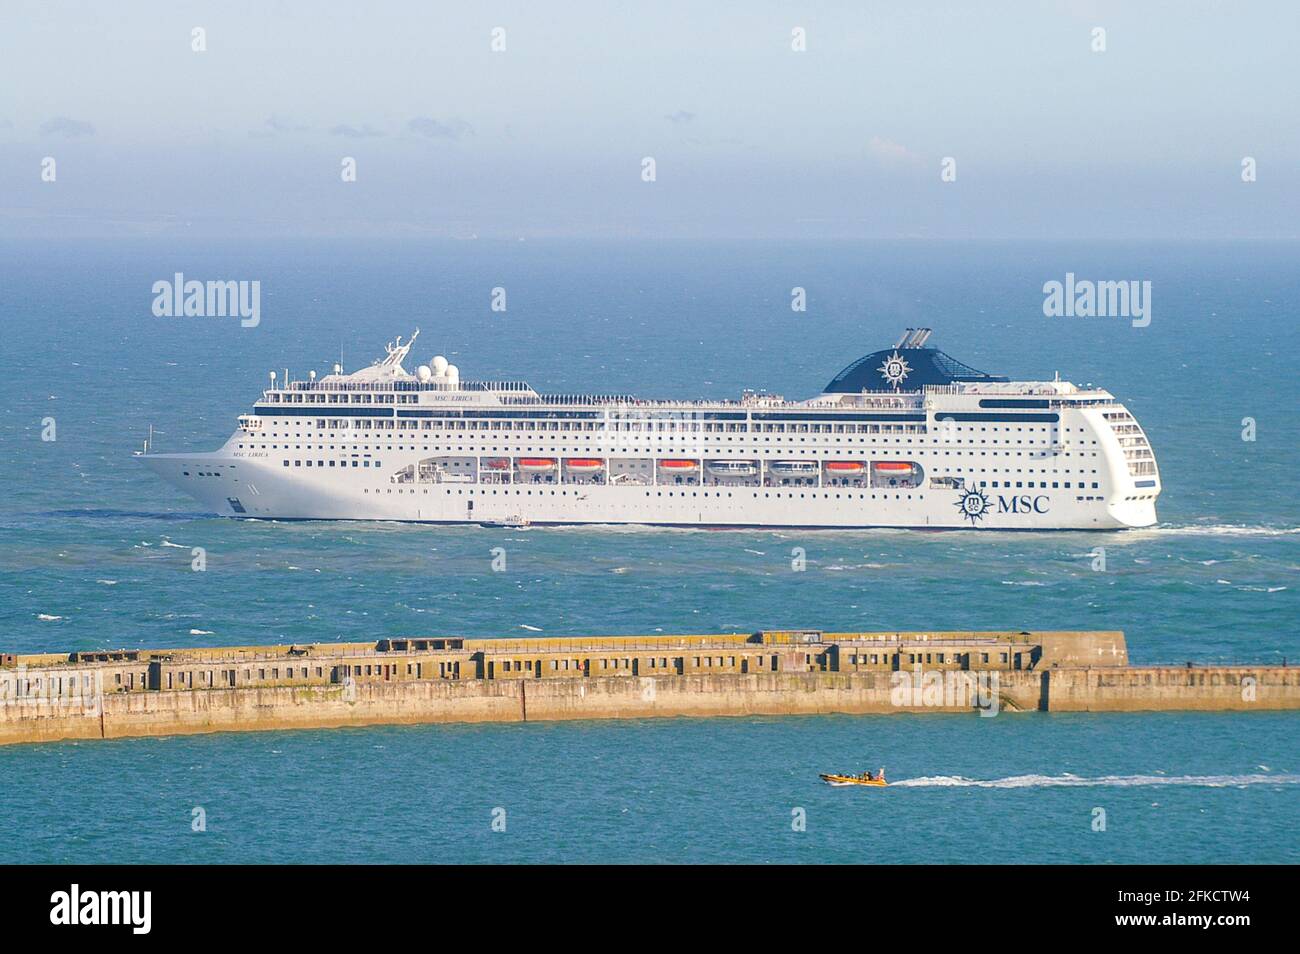 MSC Lirica, bateau de croisière, paquebot de luxe quittant le port de Douvres, le port de passage situé à Douvres, Kent, se Angleterre. Départ du paquebot de croisière Banque D'Images